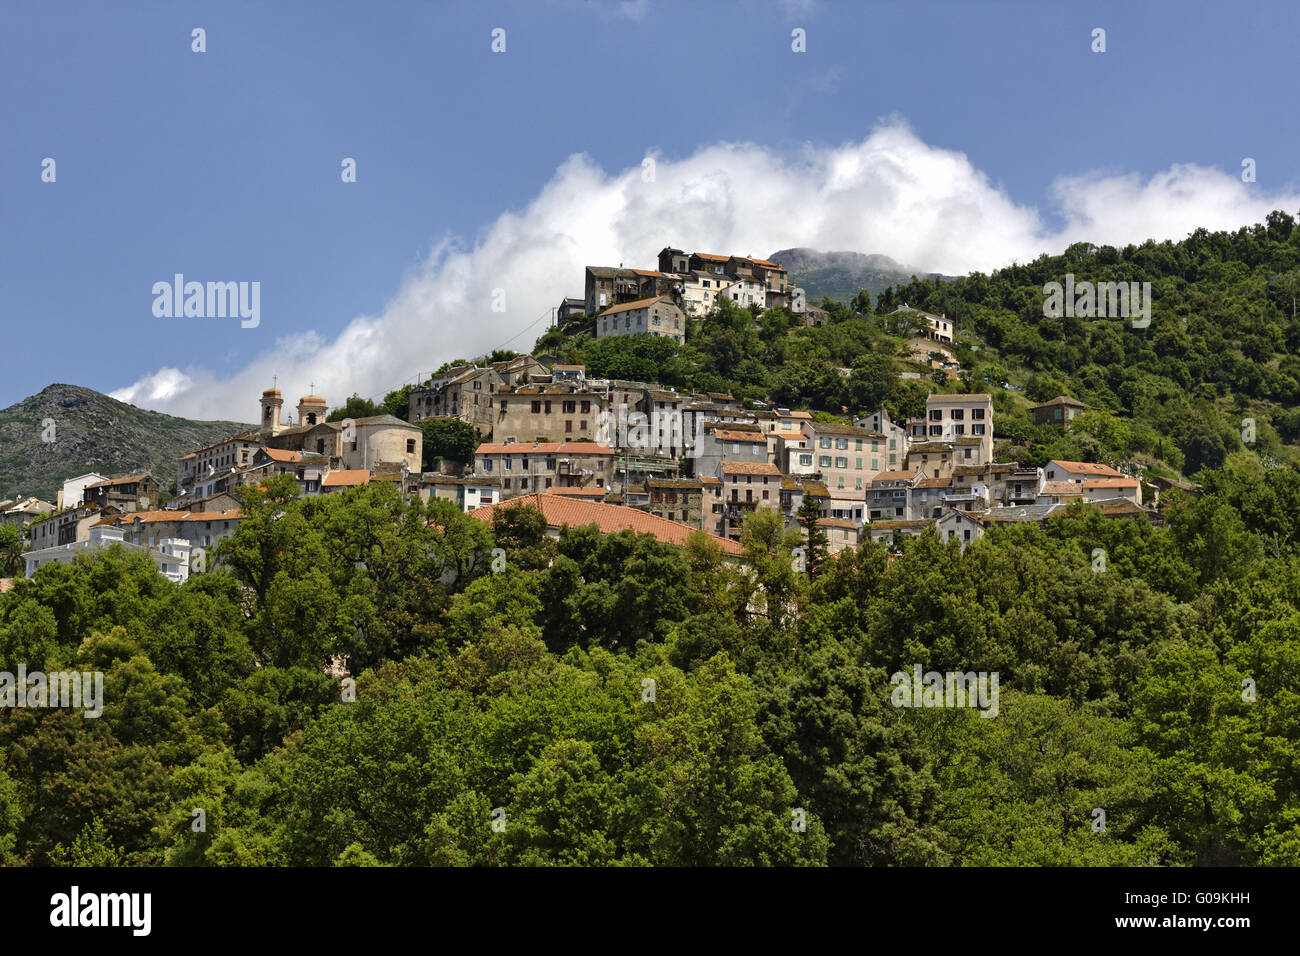 The mountain village Oletta in the Nebbio, Corsica Stock Photo